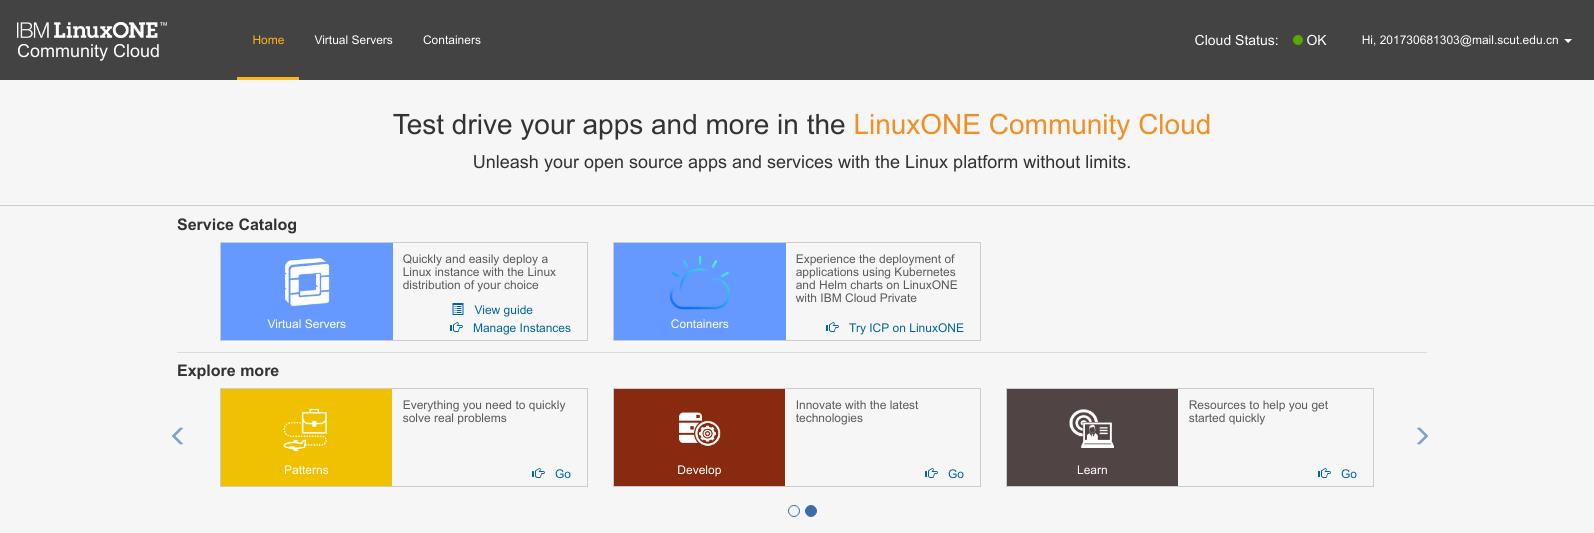 华工软院IBM LinuxONE Community Cloud云计算实验 - 文章图片